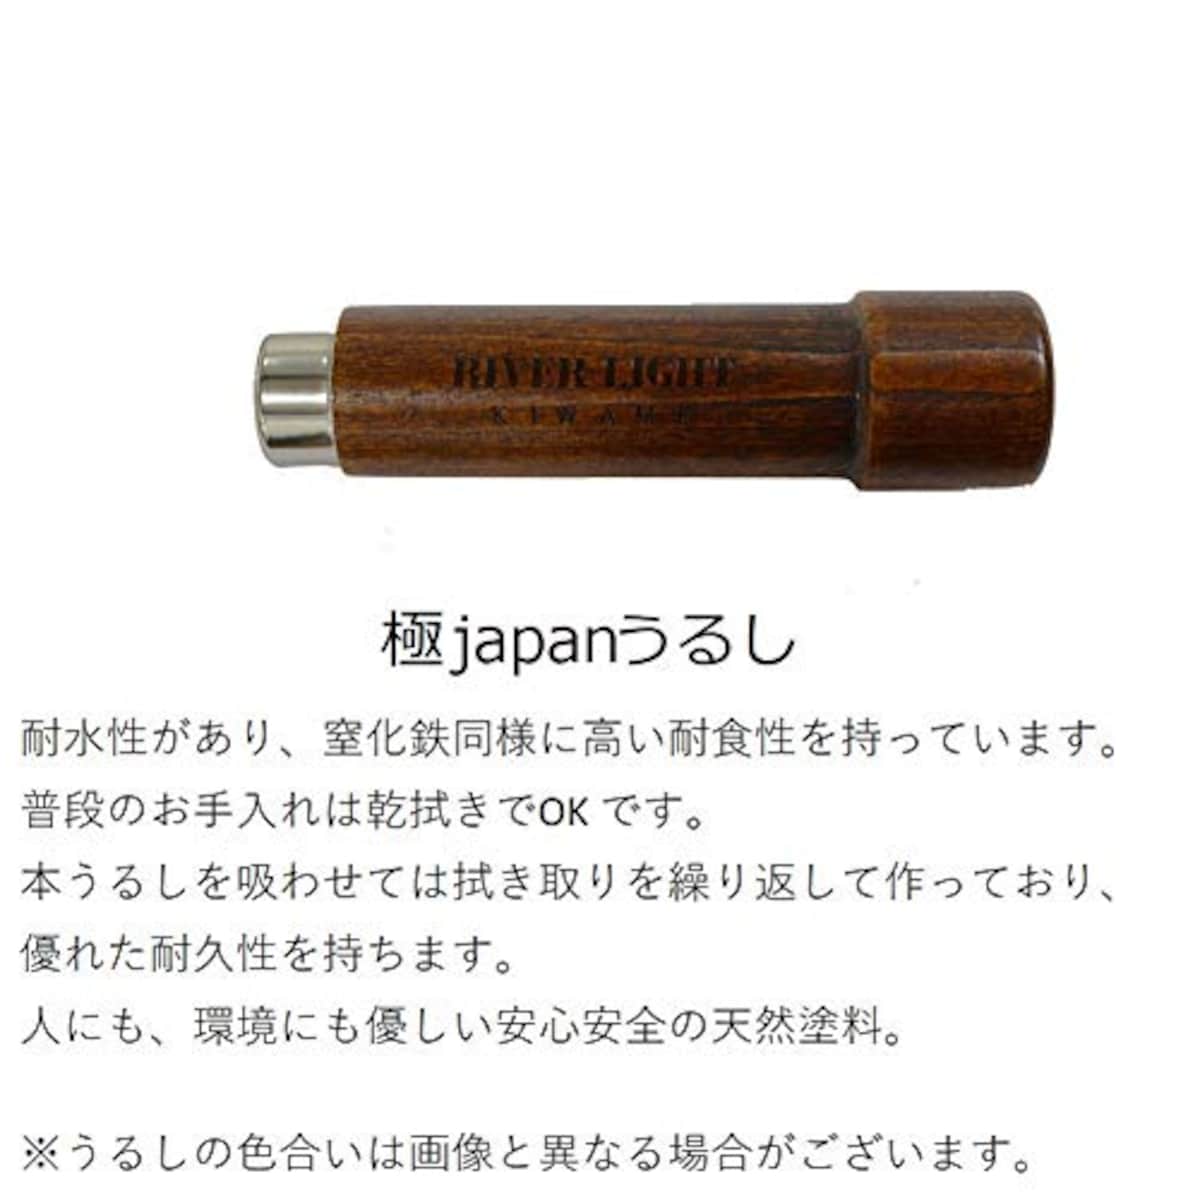  リバーライト 極japanうるし 鉄 フライパン 20cm 窒化鉄 窒化加工 IH対応 サビにくい 日本製 KU1220画像2 